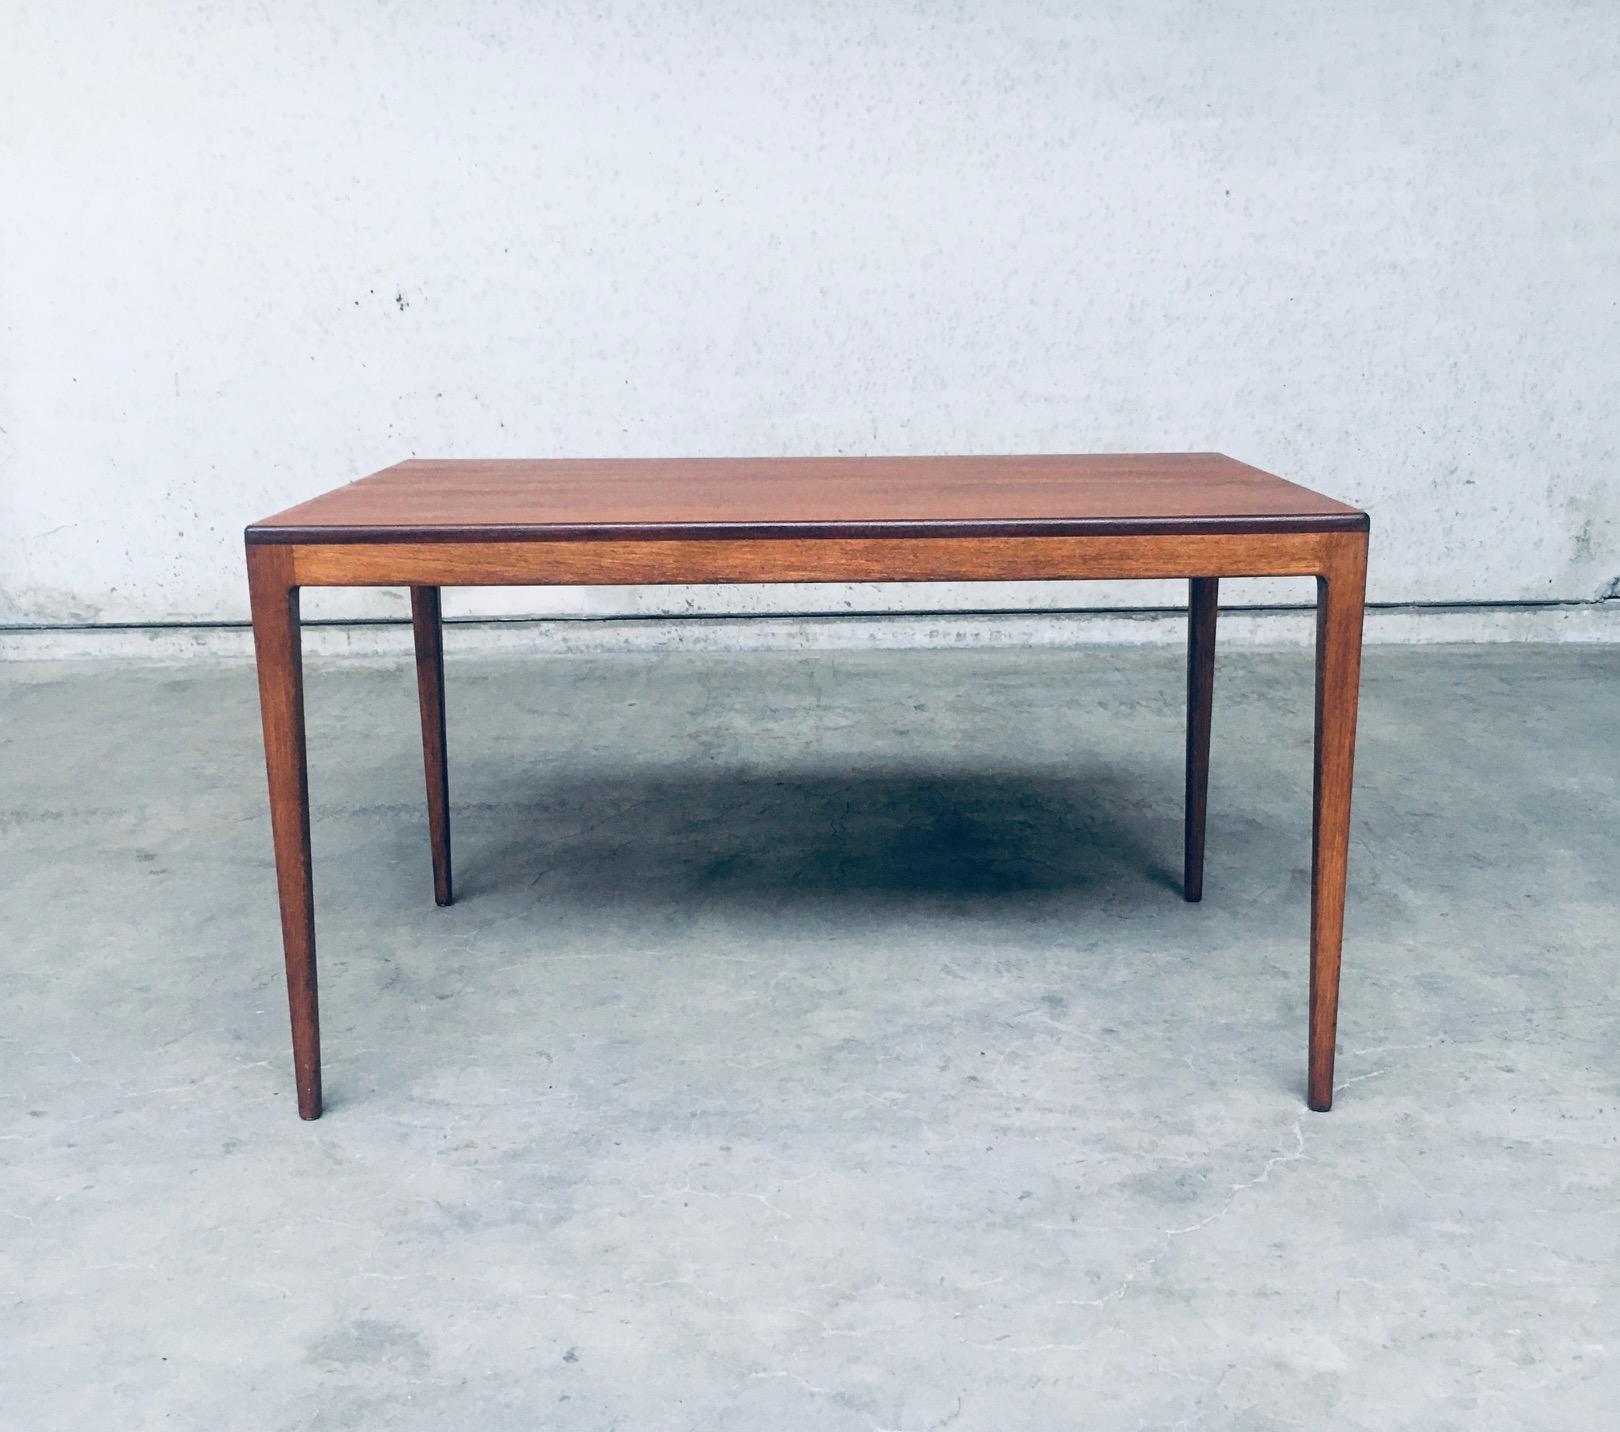 Oak Mid-Century Modern Design Dining Table by Hartmut Lohmeyer for Wilkhahn, 1958